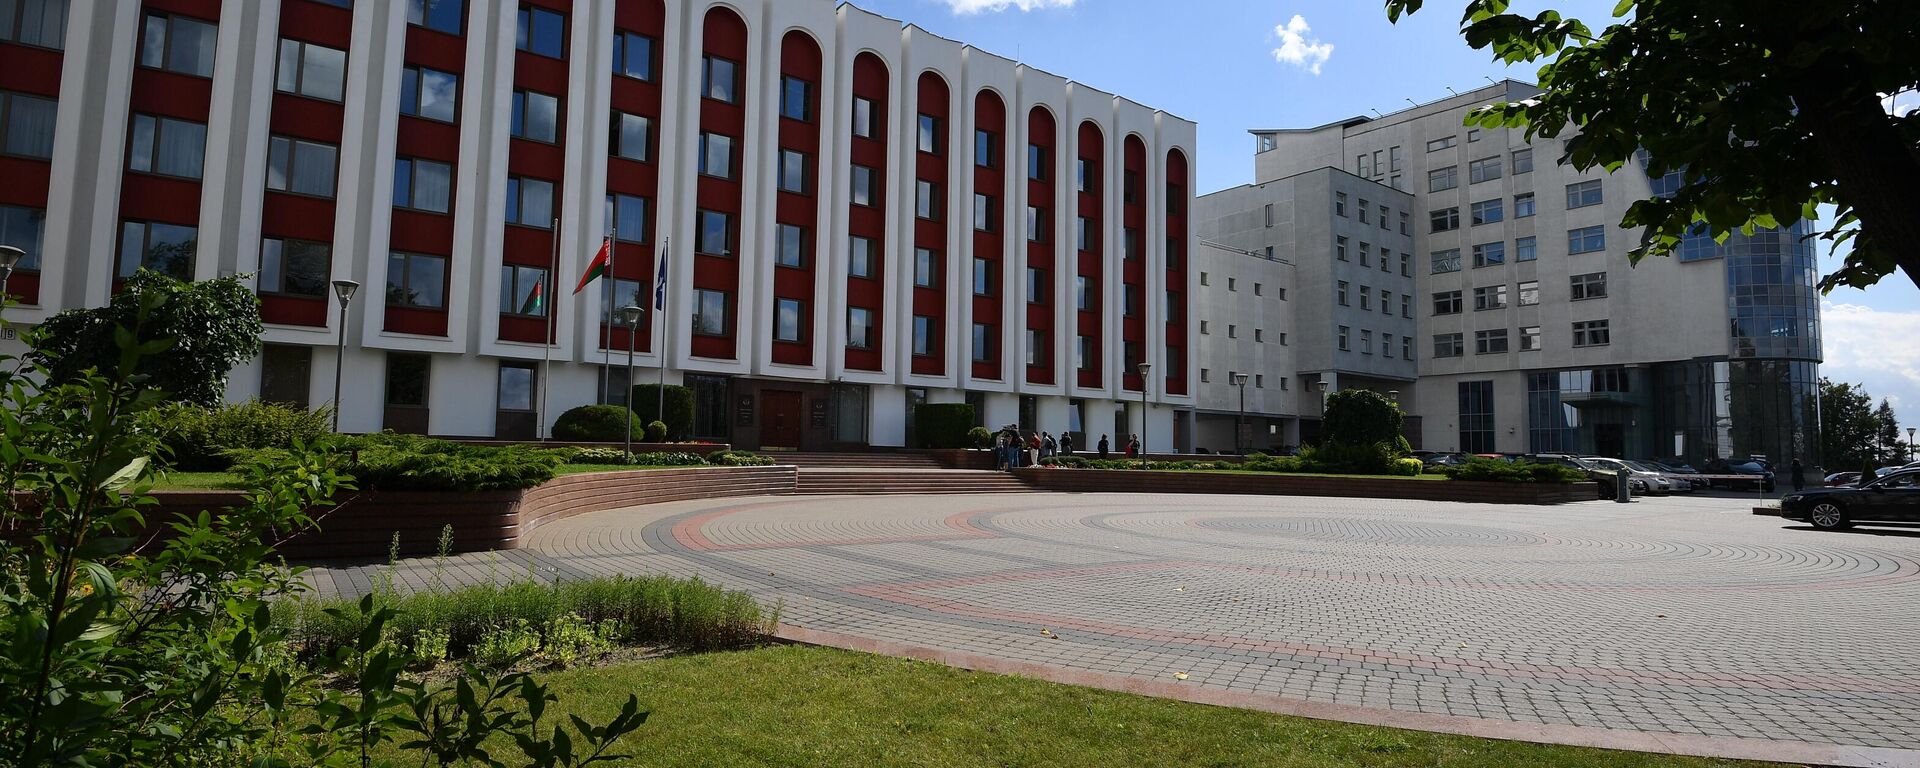 Zgrada Ministarstva spoljnih poslova Belorusije u Minsku - Sputnik Srbija, 1920, 02.12.2021